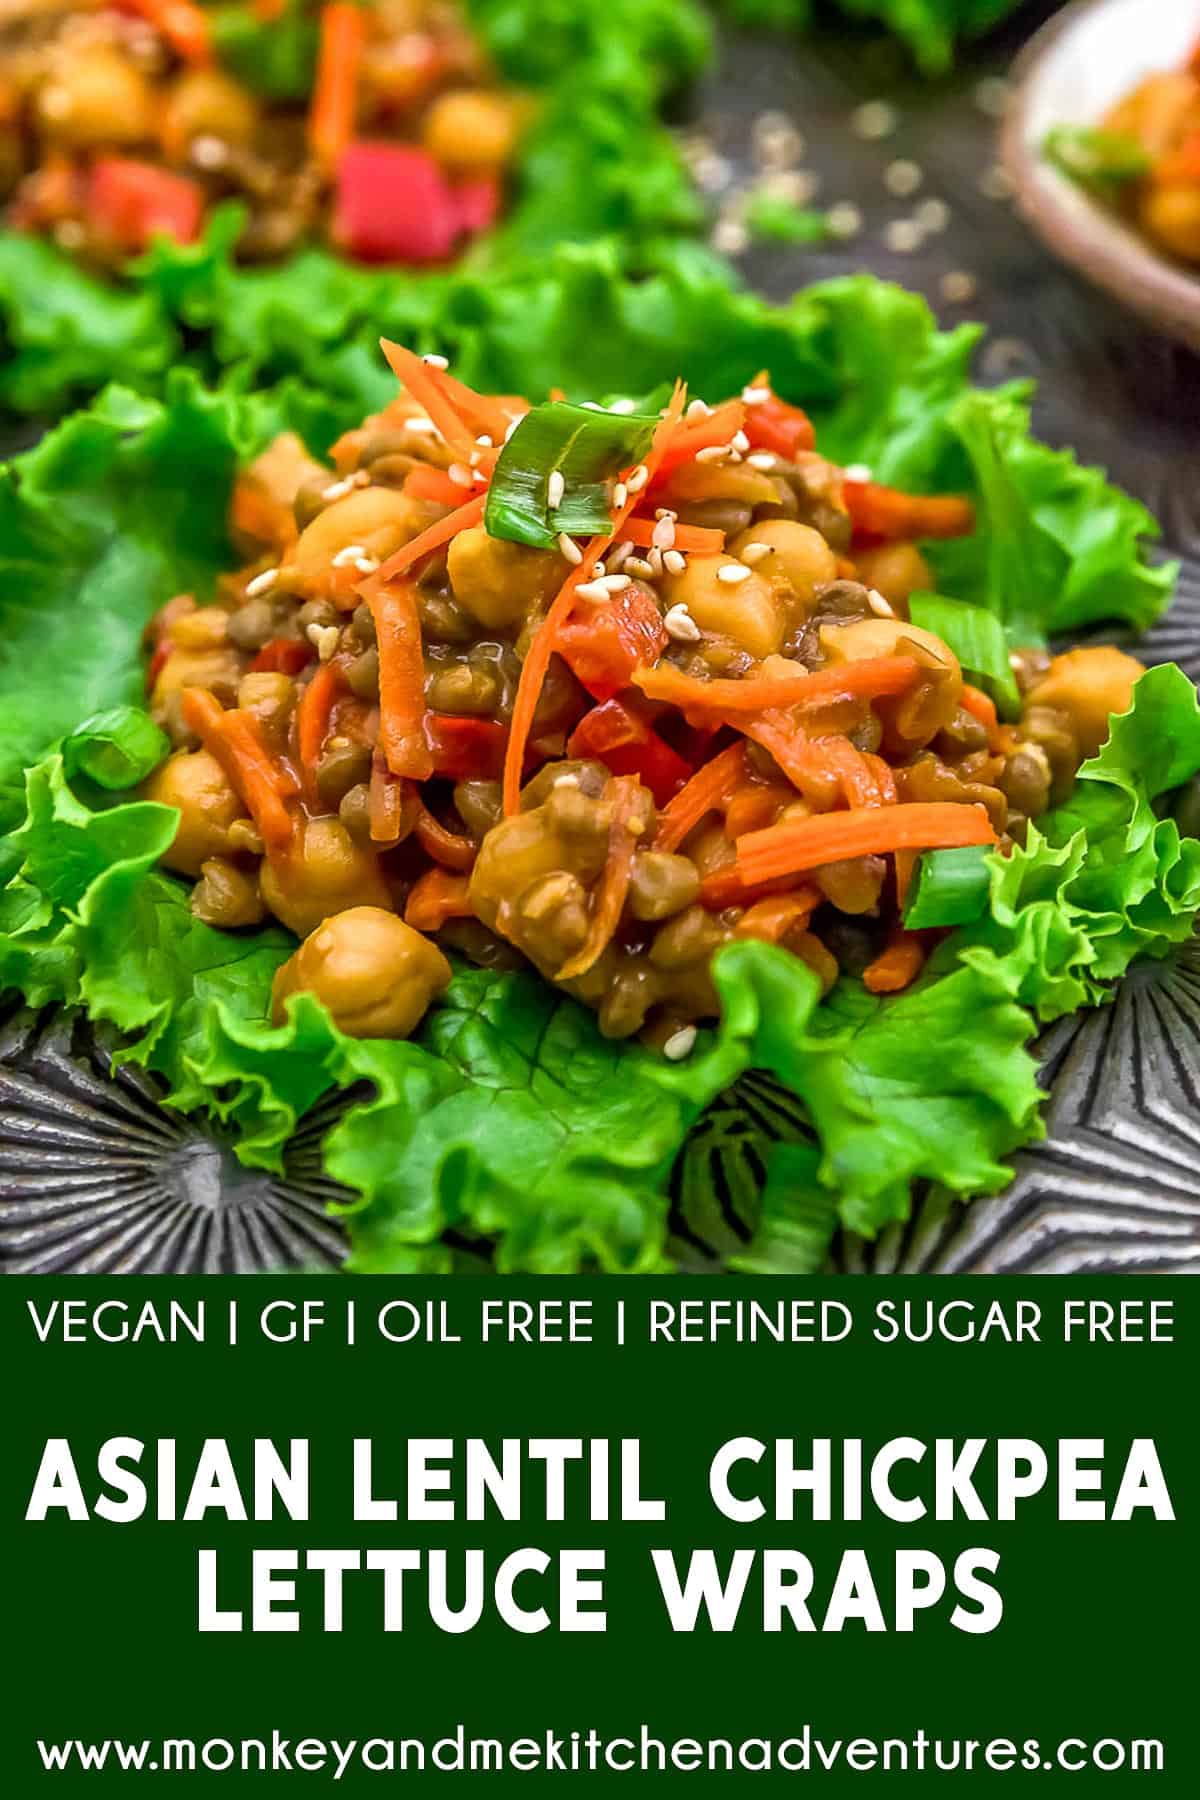 Asian Lentil Chickpea Lettuce Wraps with text description